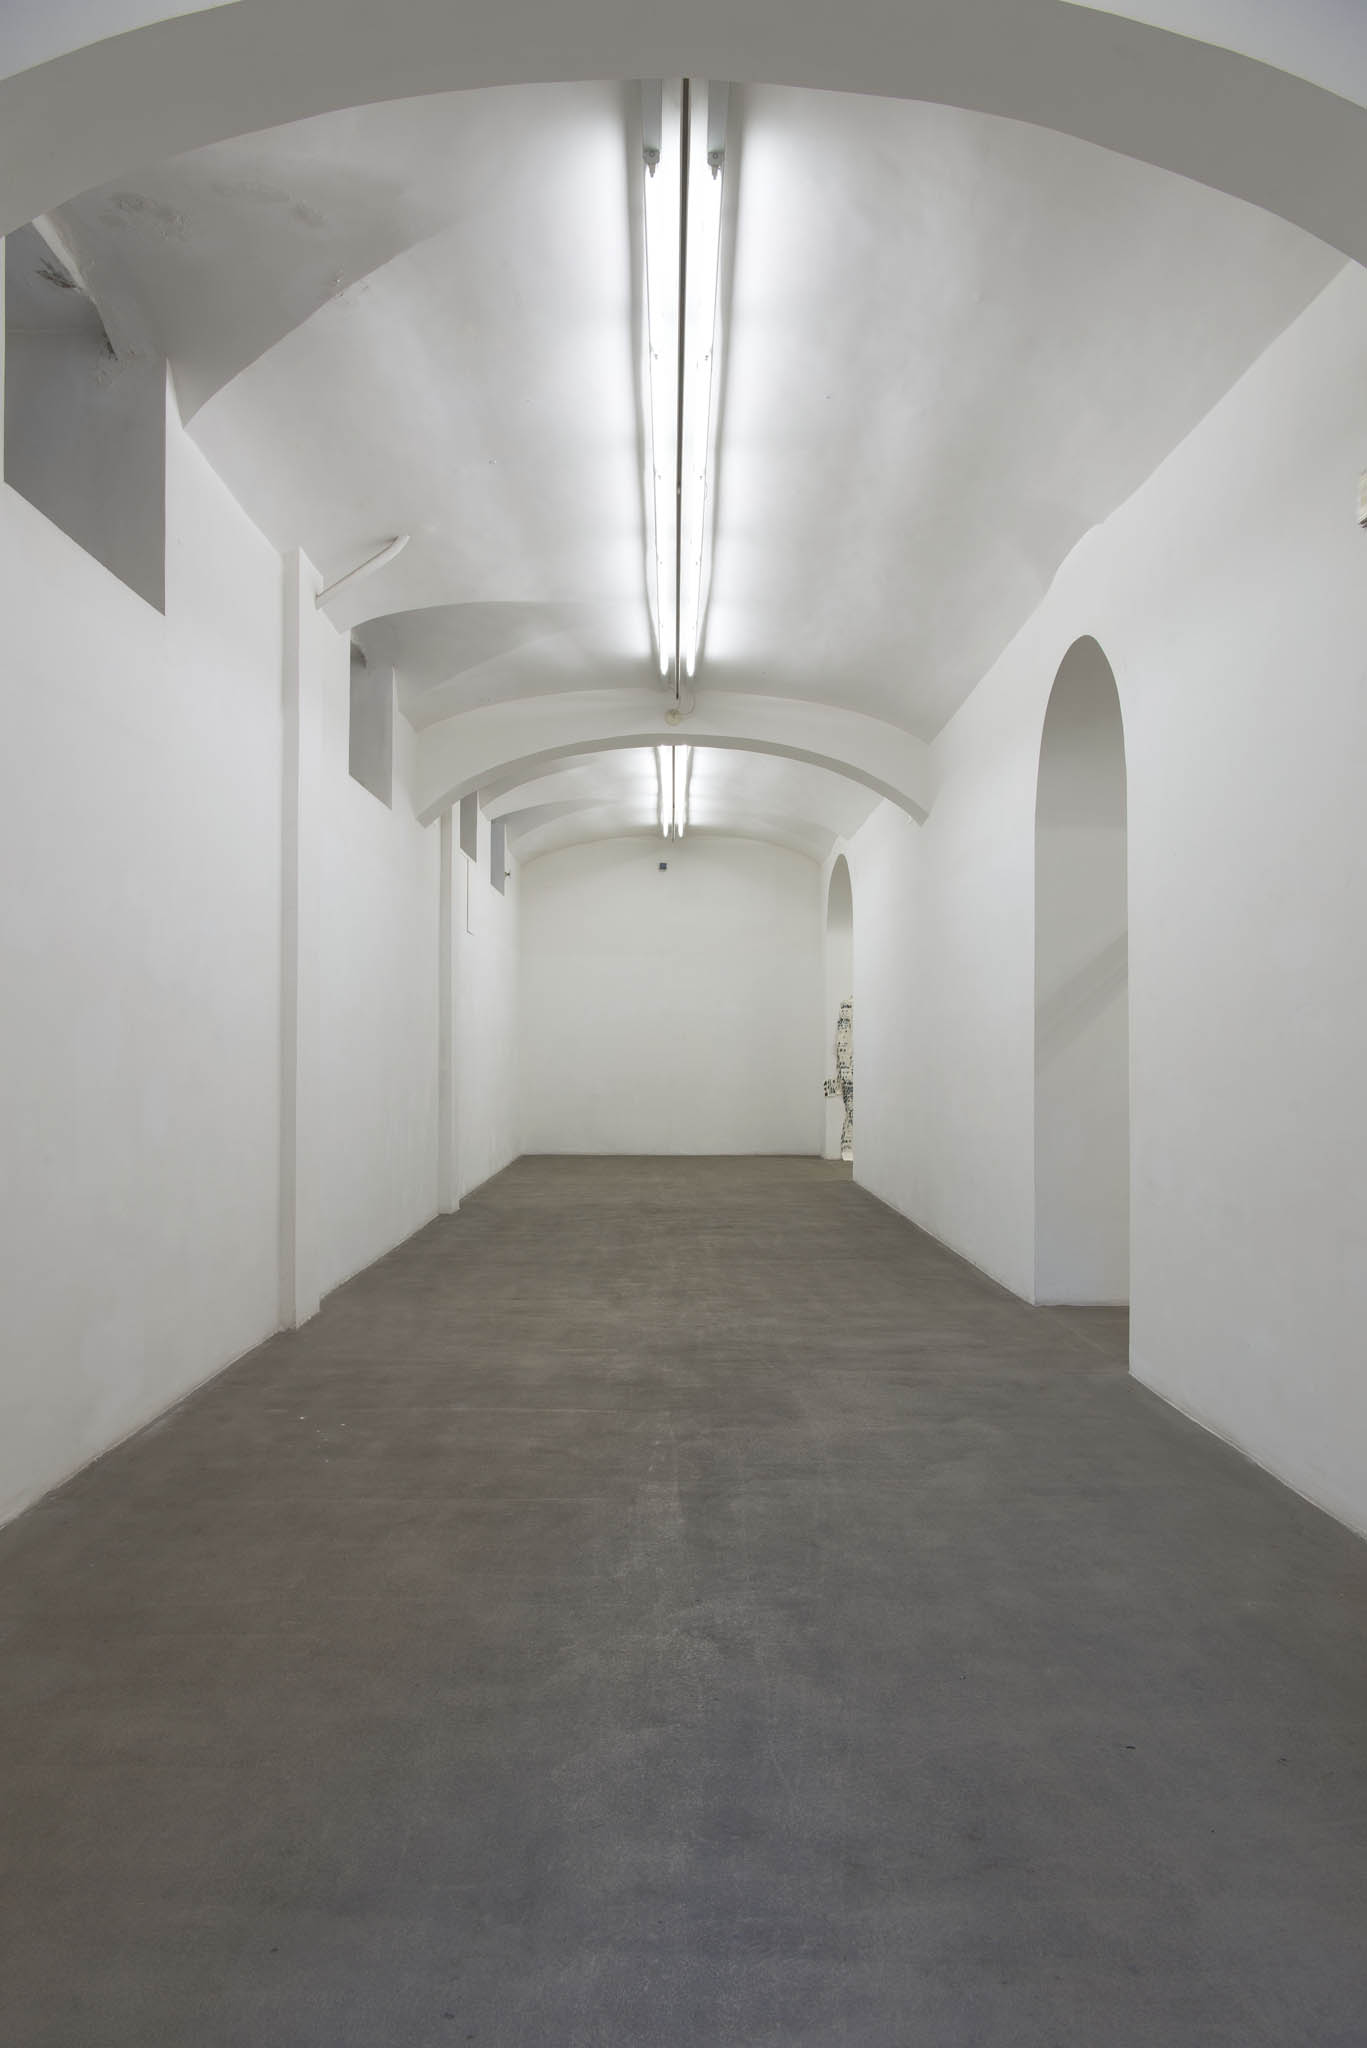 Michael Dean, Stamen Papers. Installation view at Fondazione Giuliani, photo by Giorgio Benni